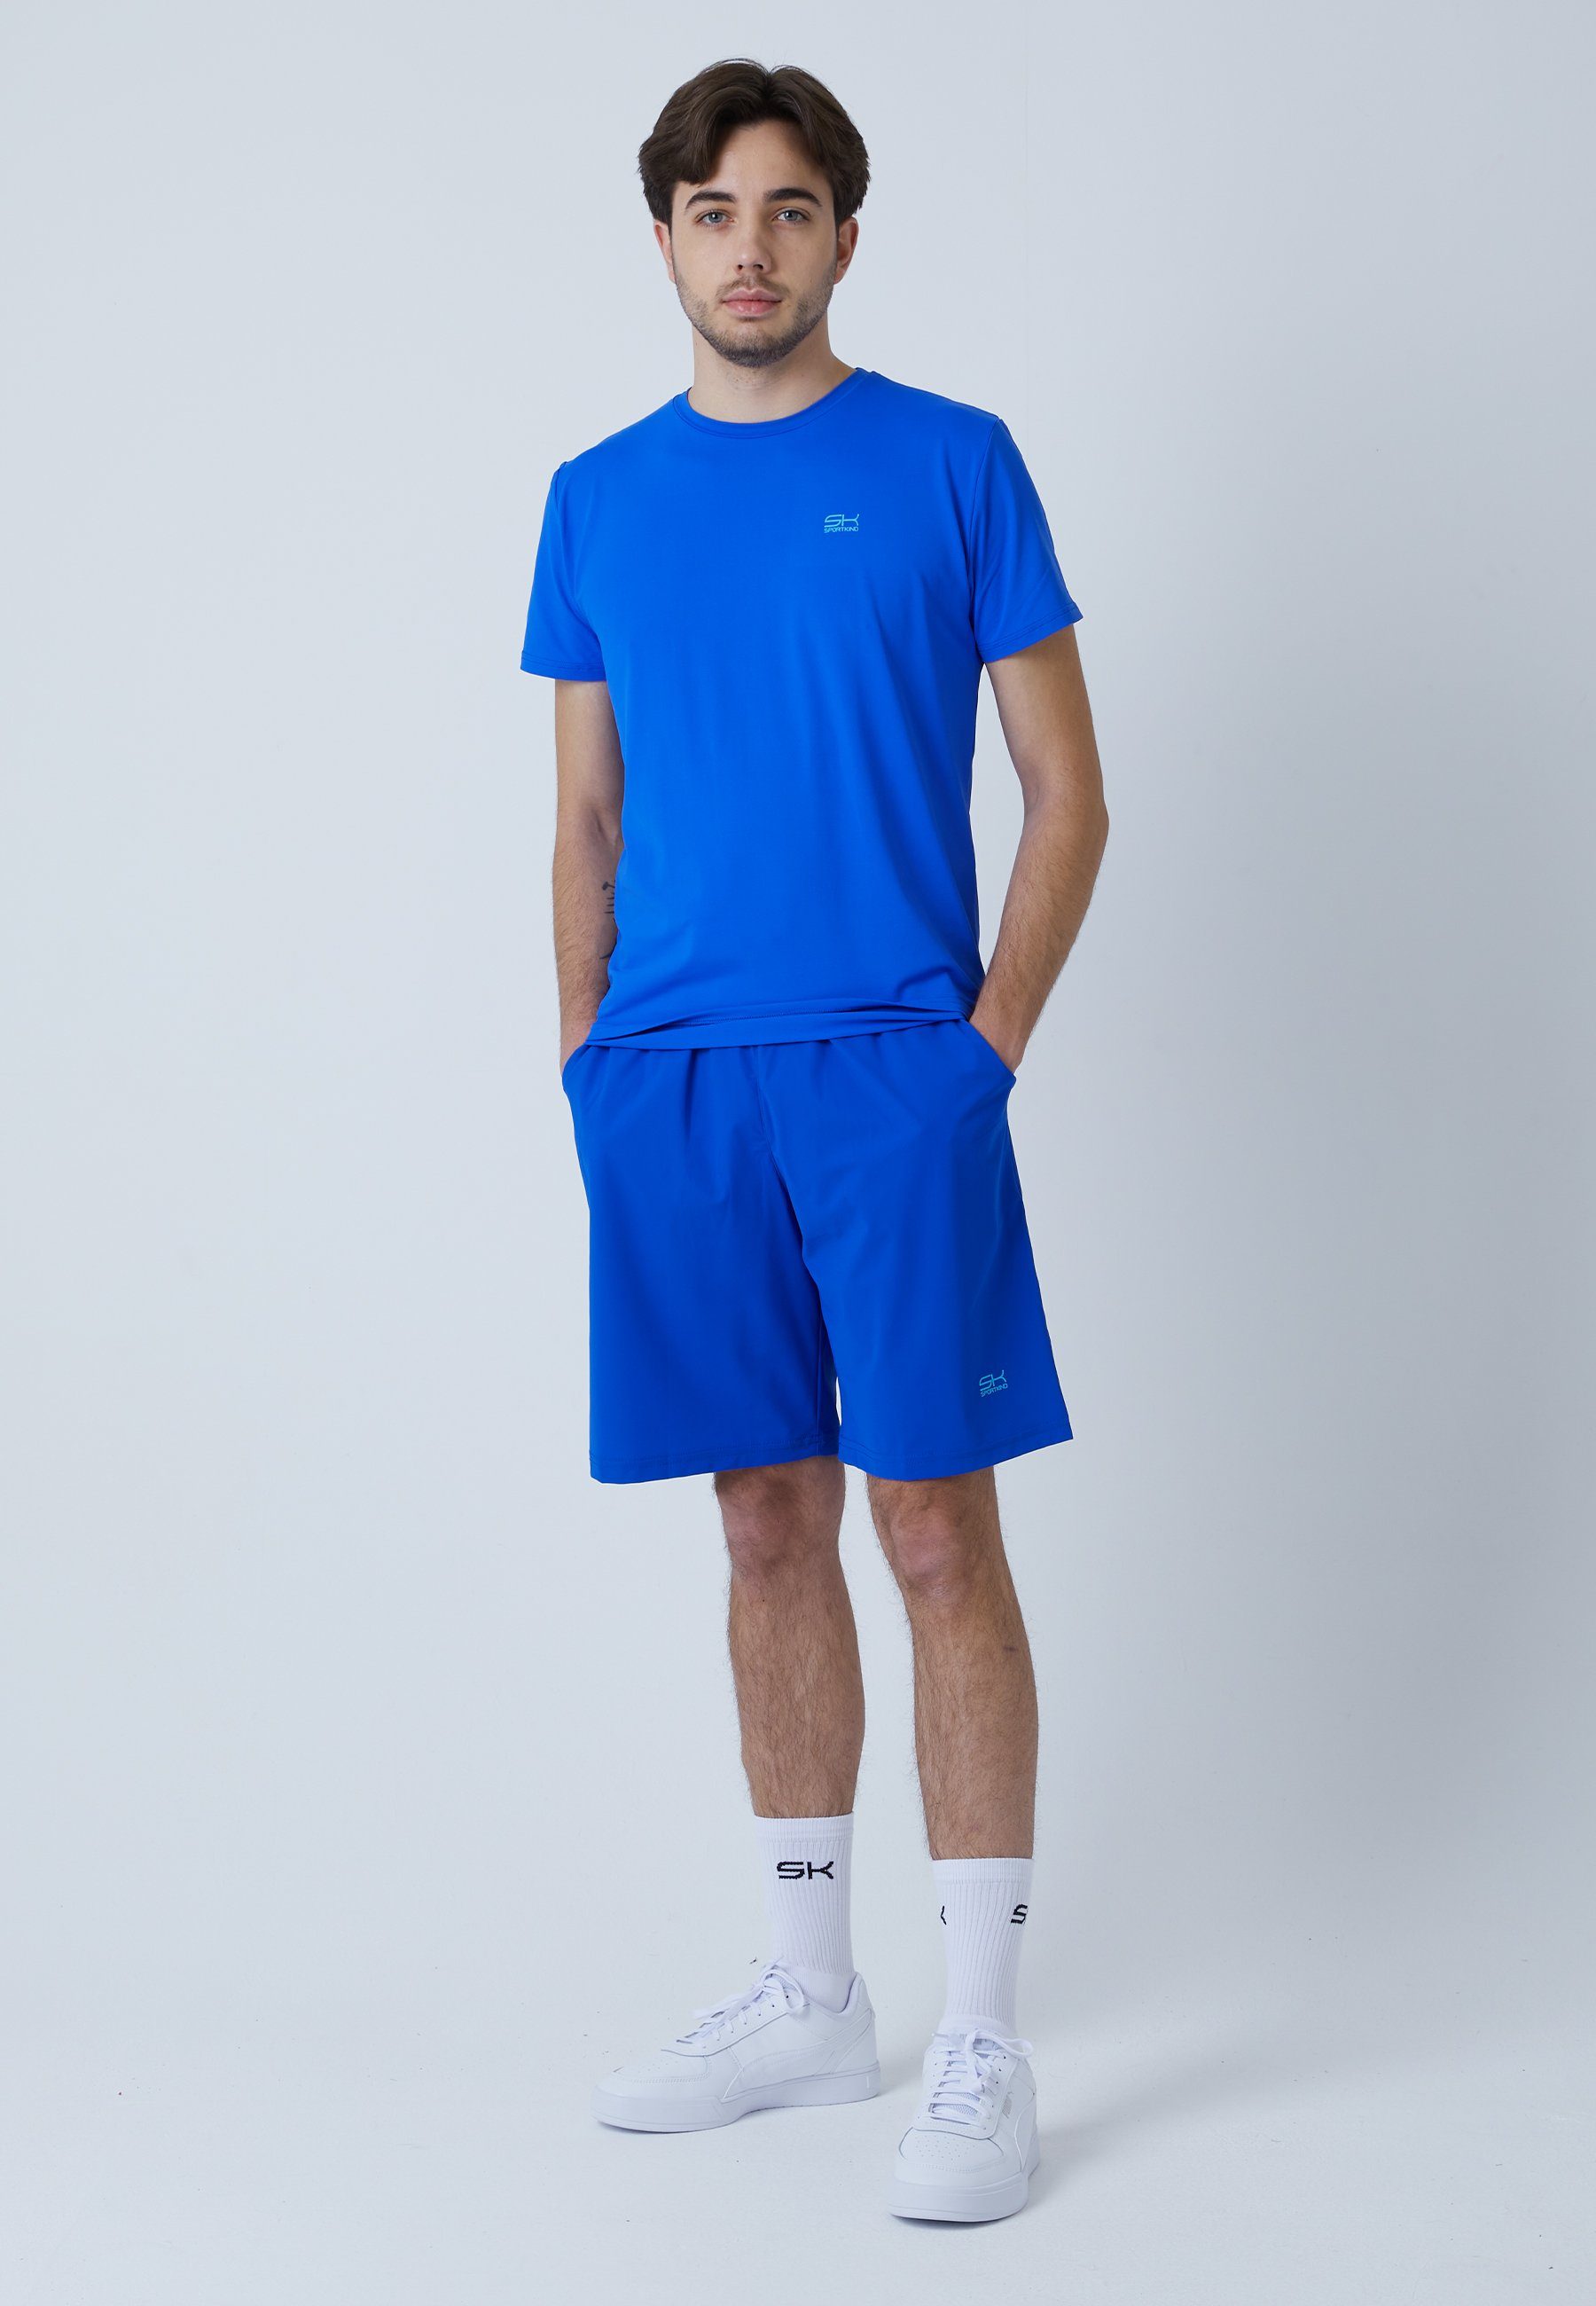 SPORTKIND Funktionsshirt Tennis T-Shirt kobaltblau & Jungen Rundhals Herren